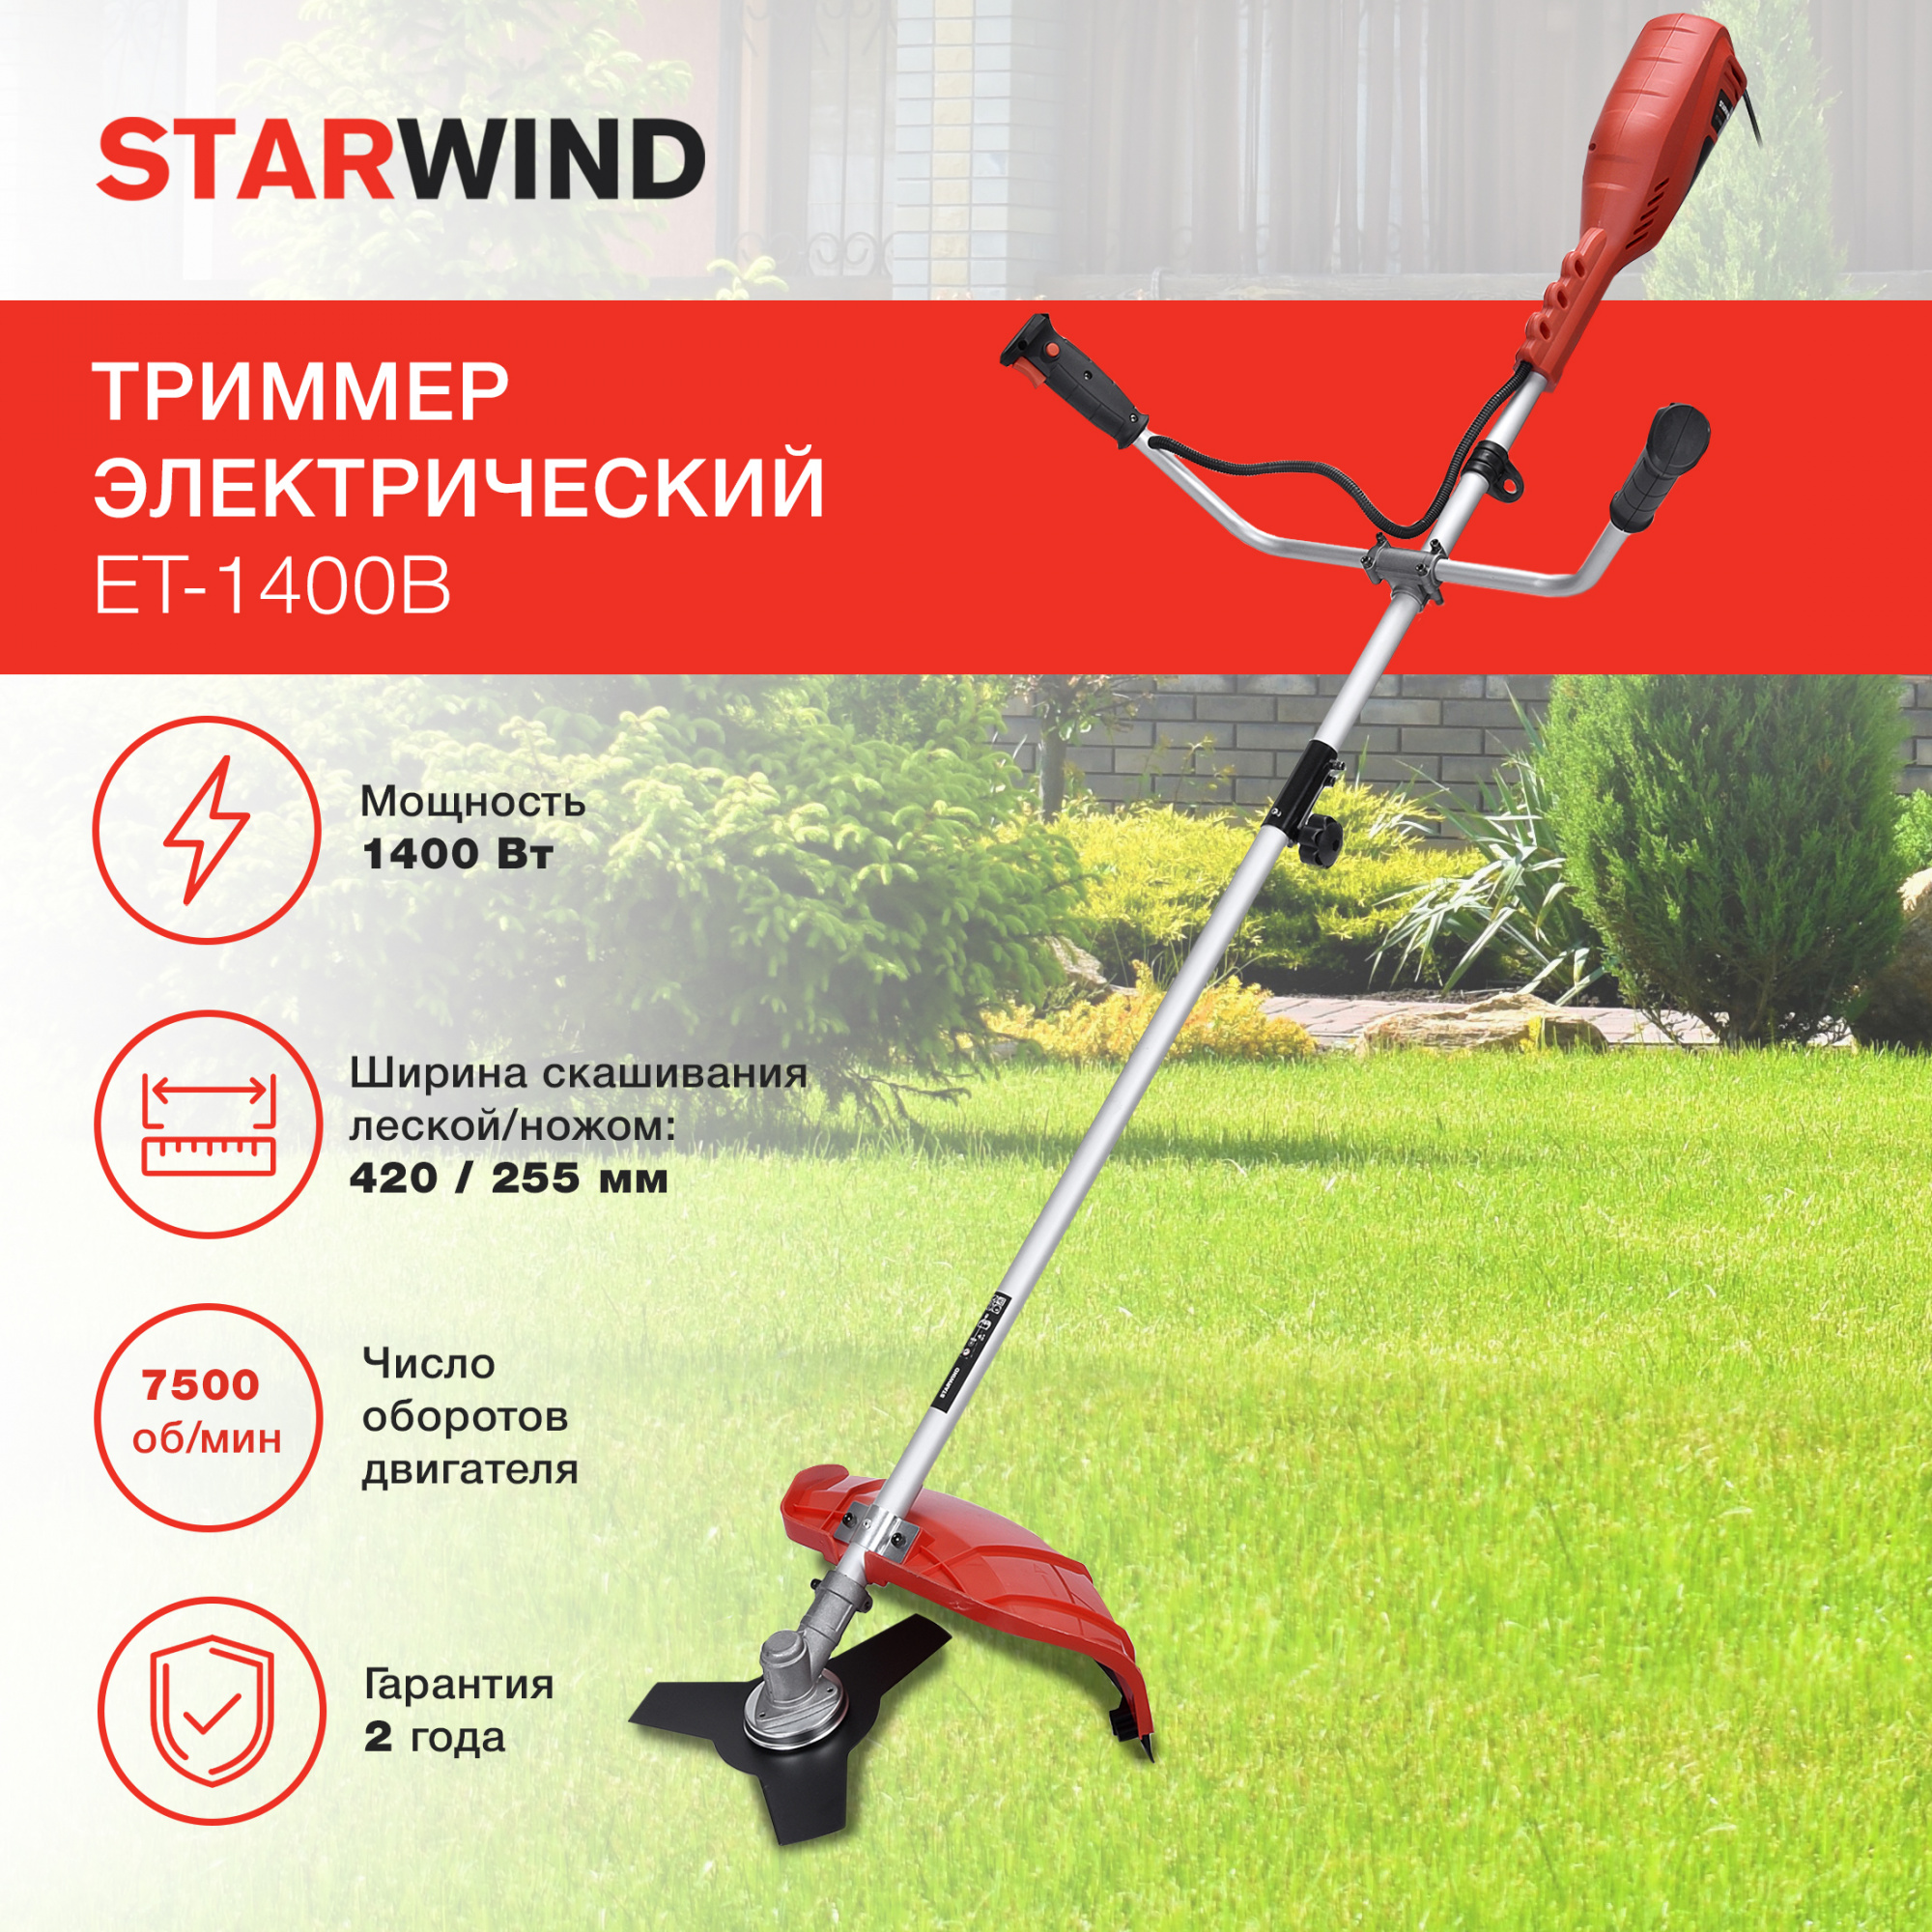 Триммер садовый электрический Starwind ET-1400 для кошения травы, 1400 Вт, нож и леска